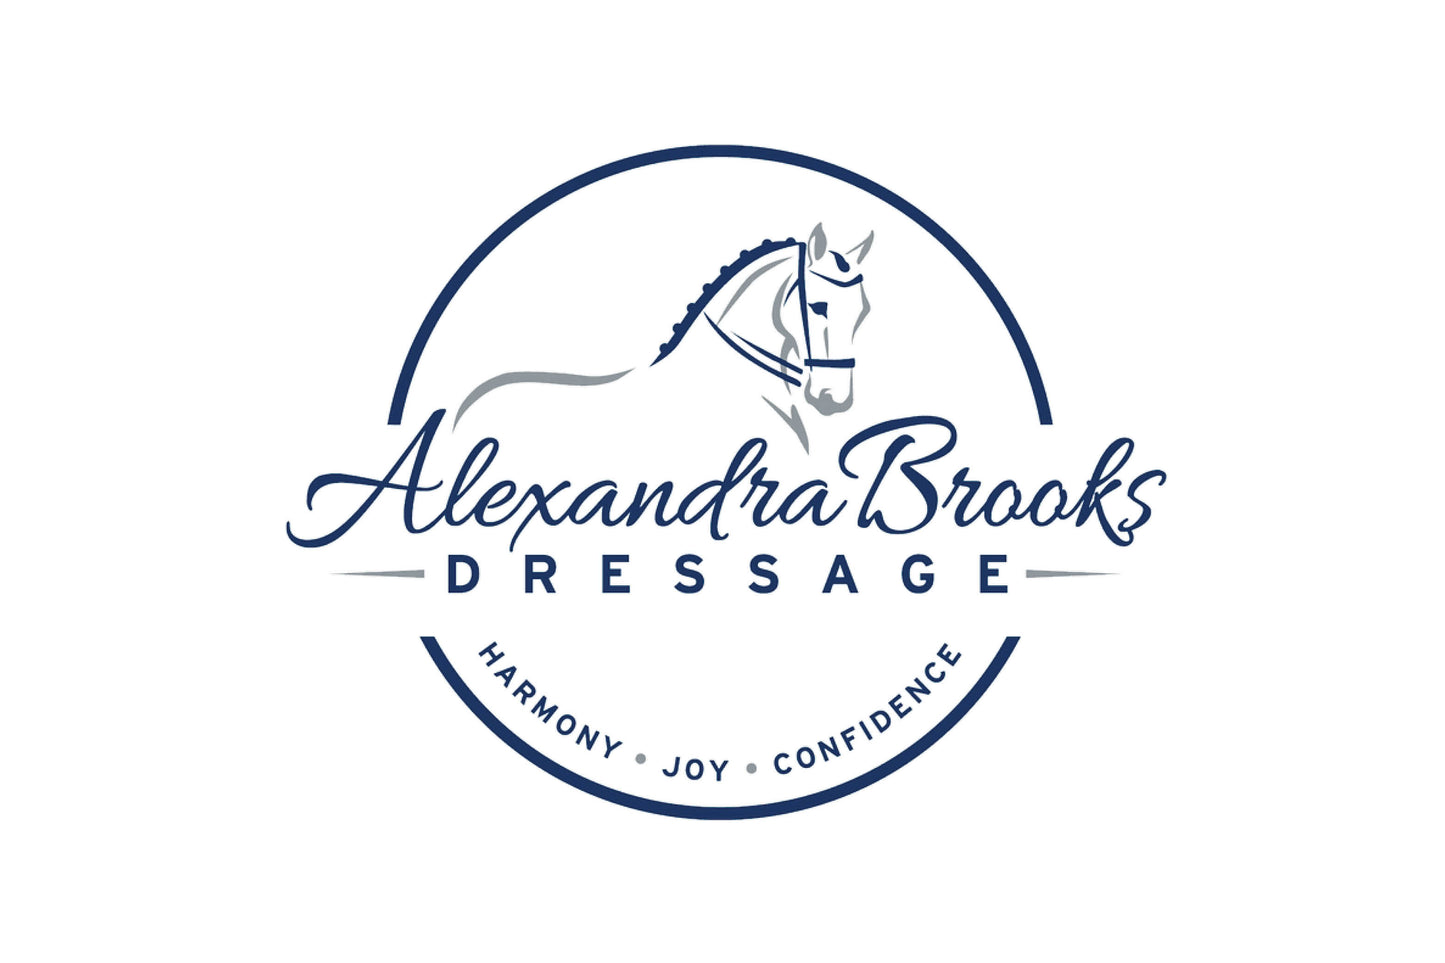 Alexandra Brooks Dressage